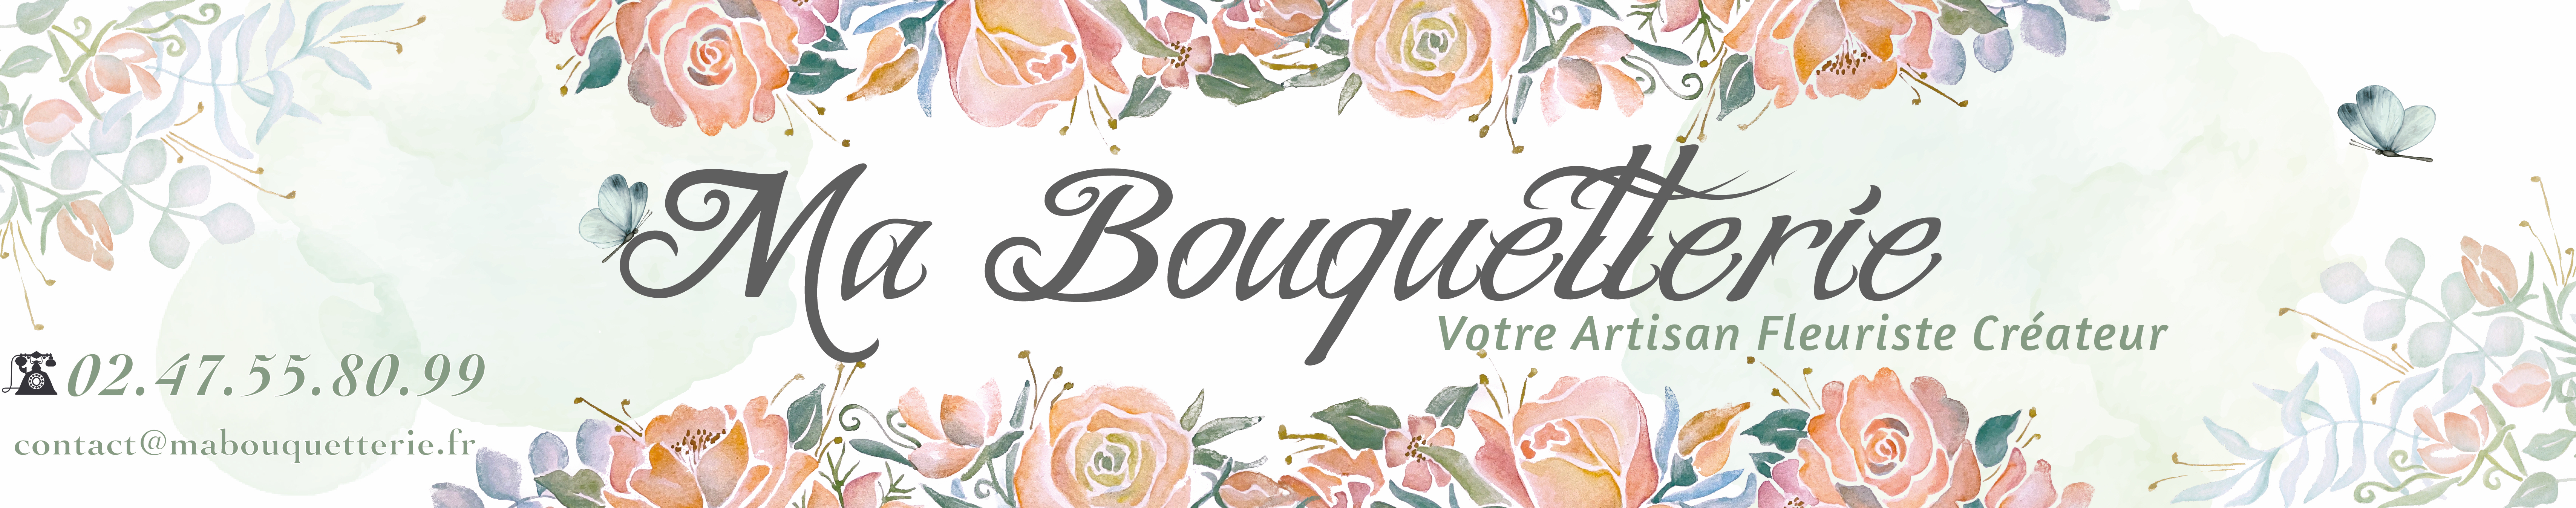 Ma Bouquetterie - Votre Artisan Fleuriste Créateur à Langeais